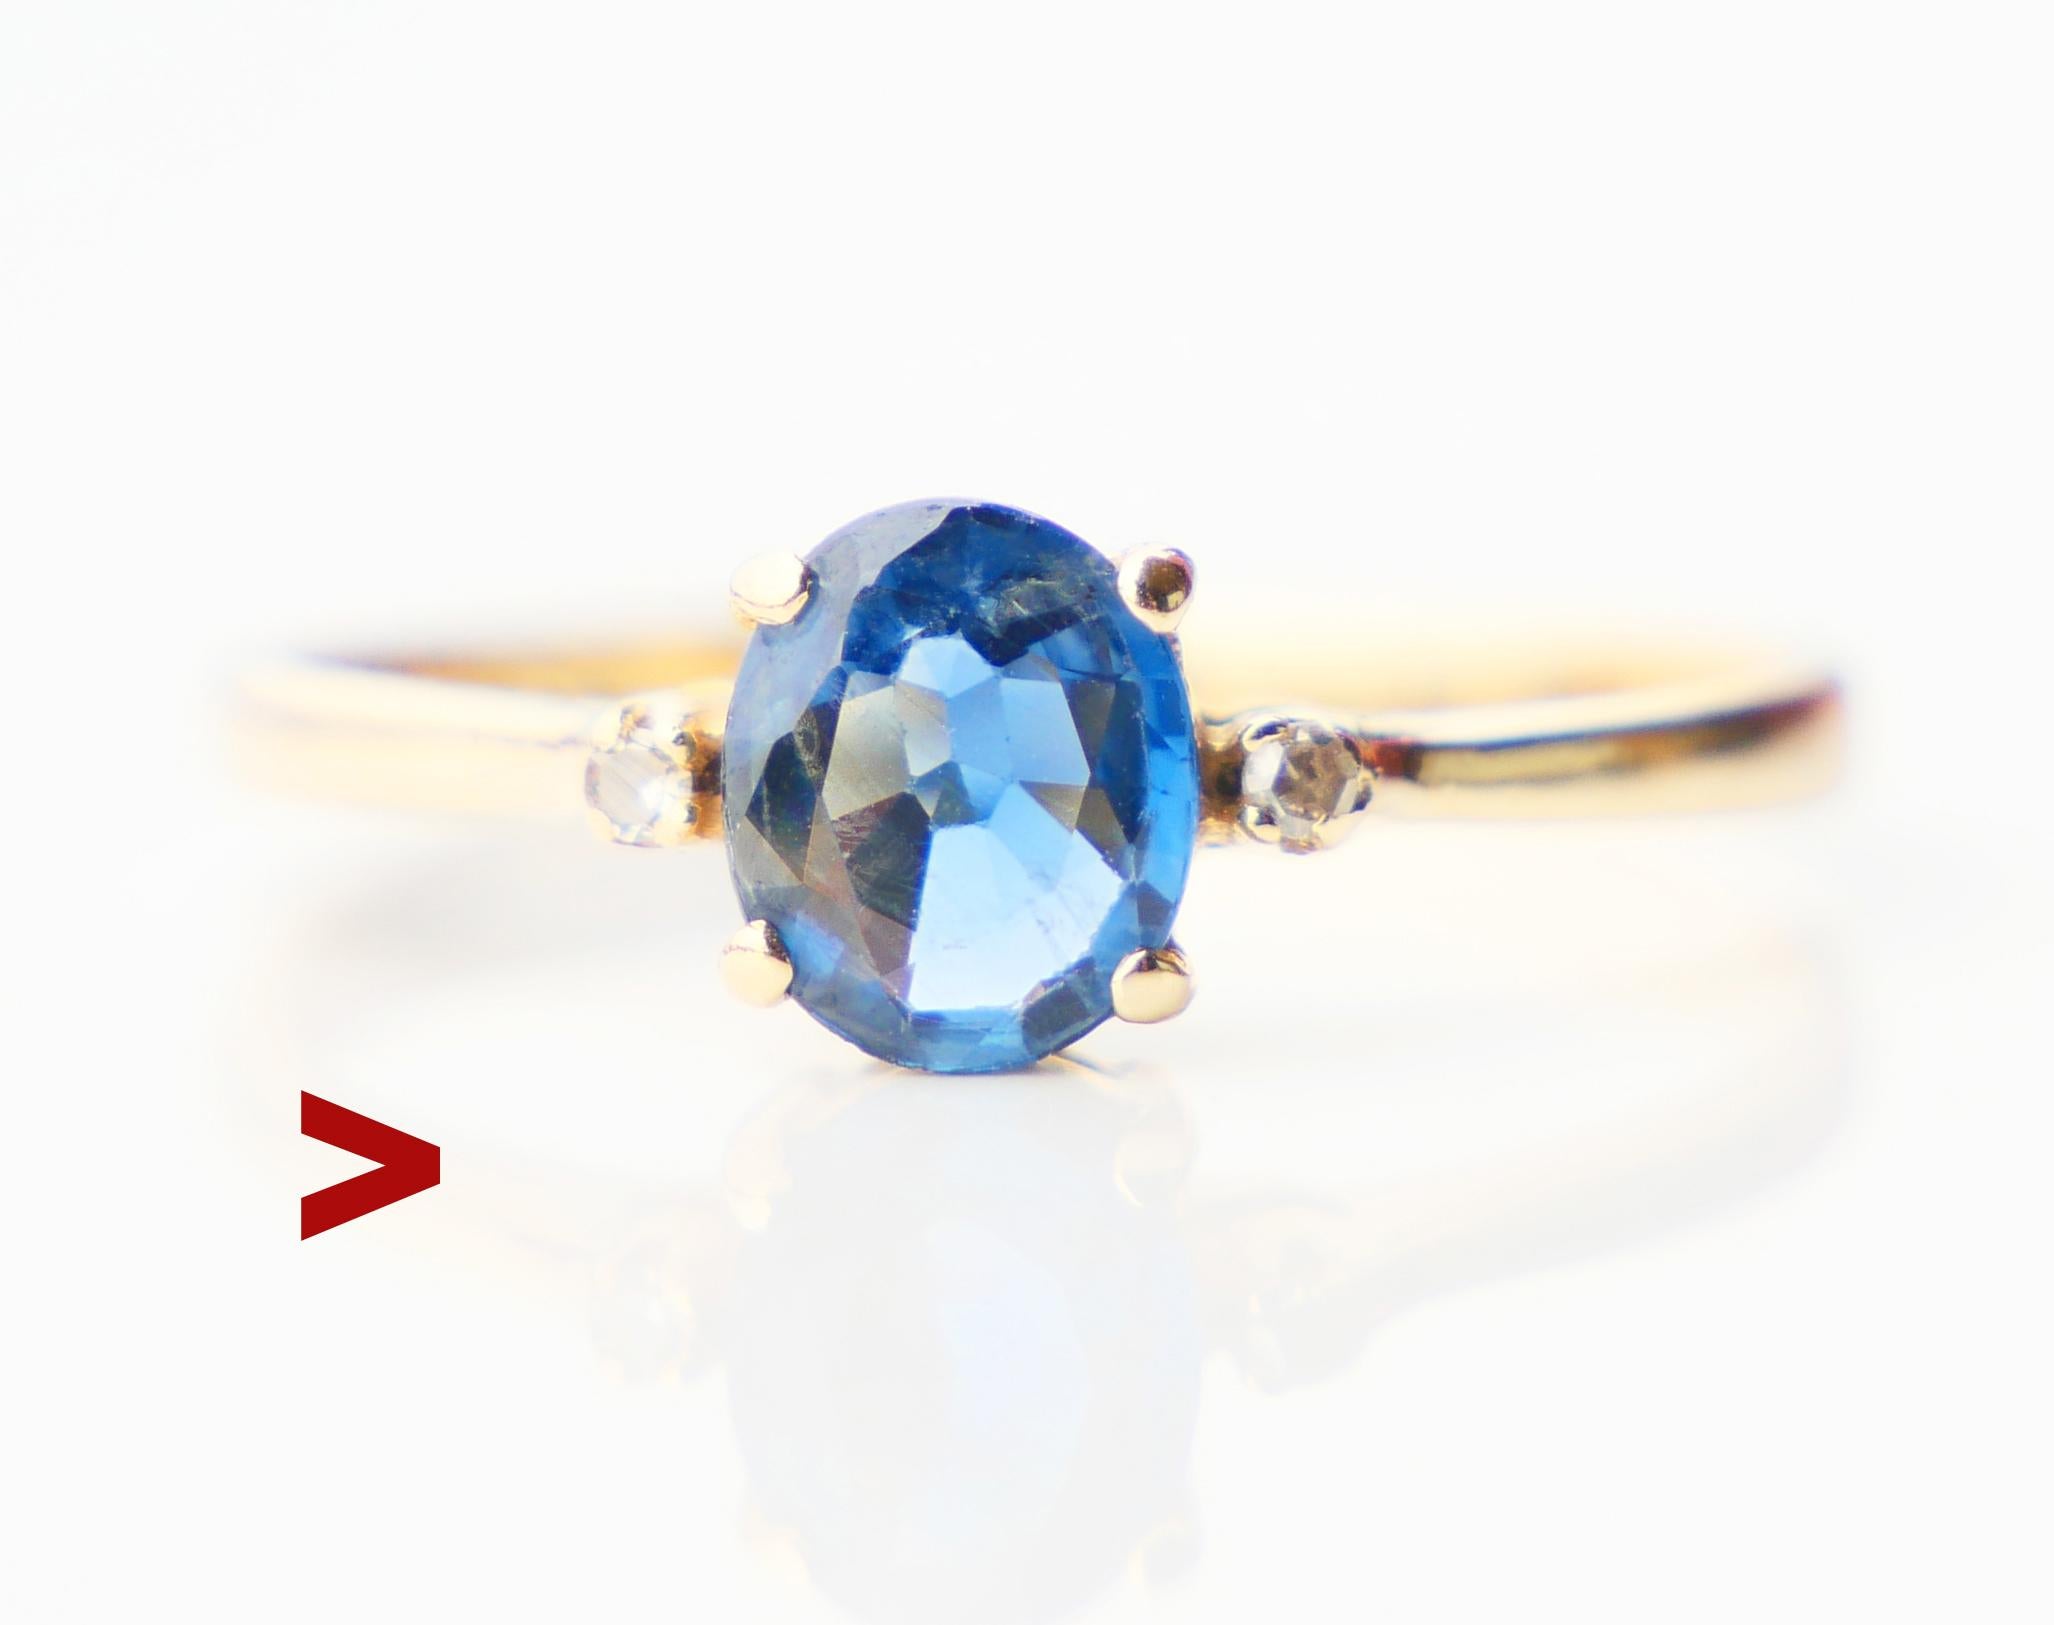 Vintage Danish Sapphire and Diamonds Ring. Das Band ist massiv 14ct Gelbgold mit Kralle gesetzt natürlichen mittel blau / transparent Saphir oval geschnitten 6mm x 5 mm x 2,35 mm tief / 0,75 ct + 2 Diamanten Ø 1,5 mm / 0,015 ct jeder. Gepunzt mit